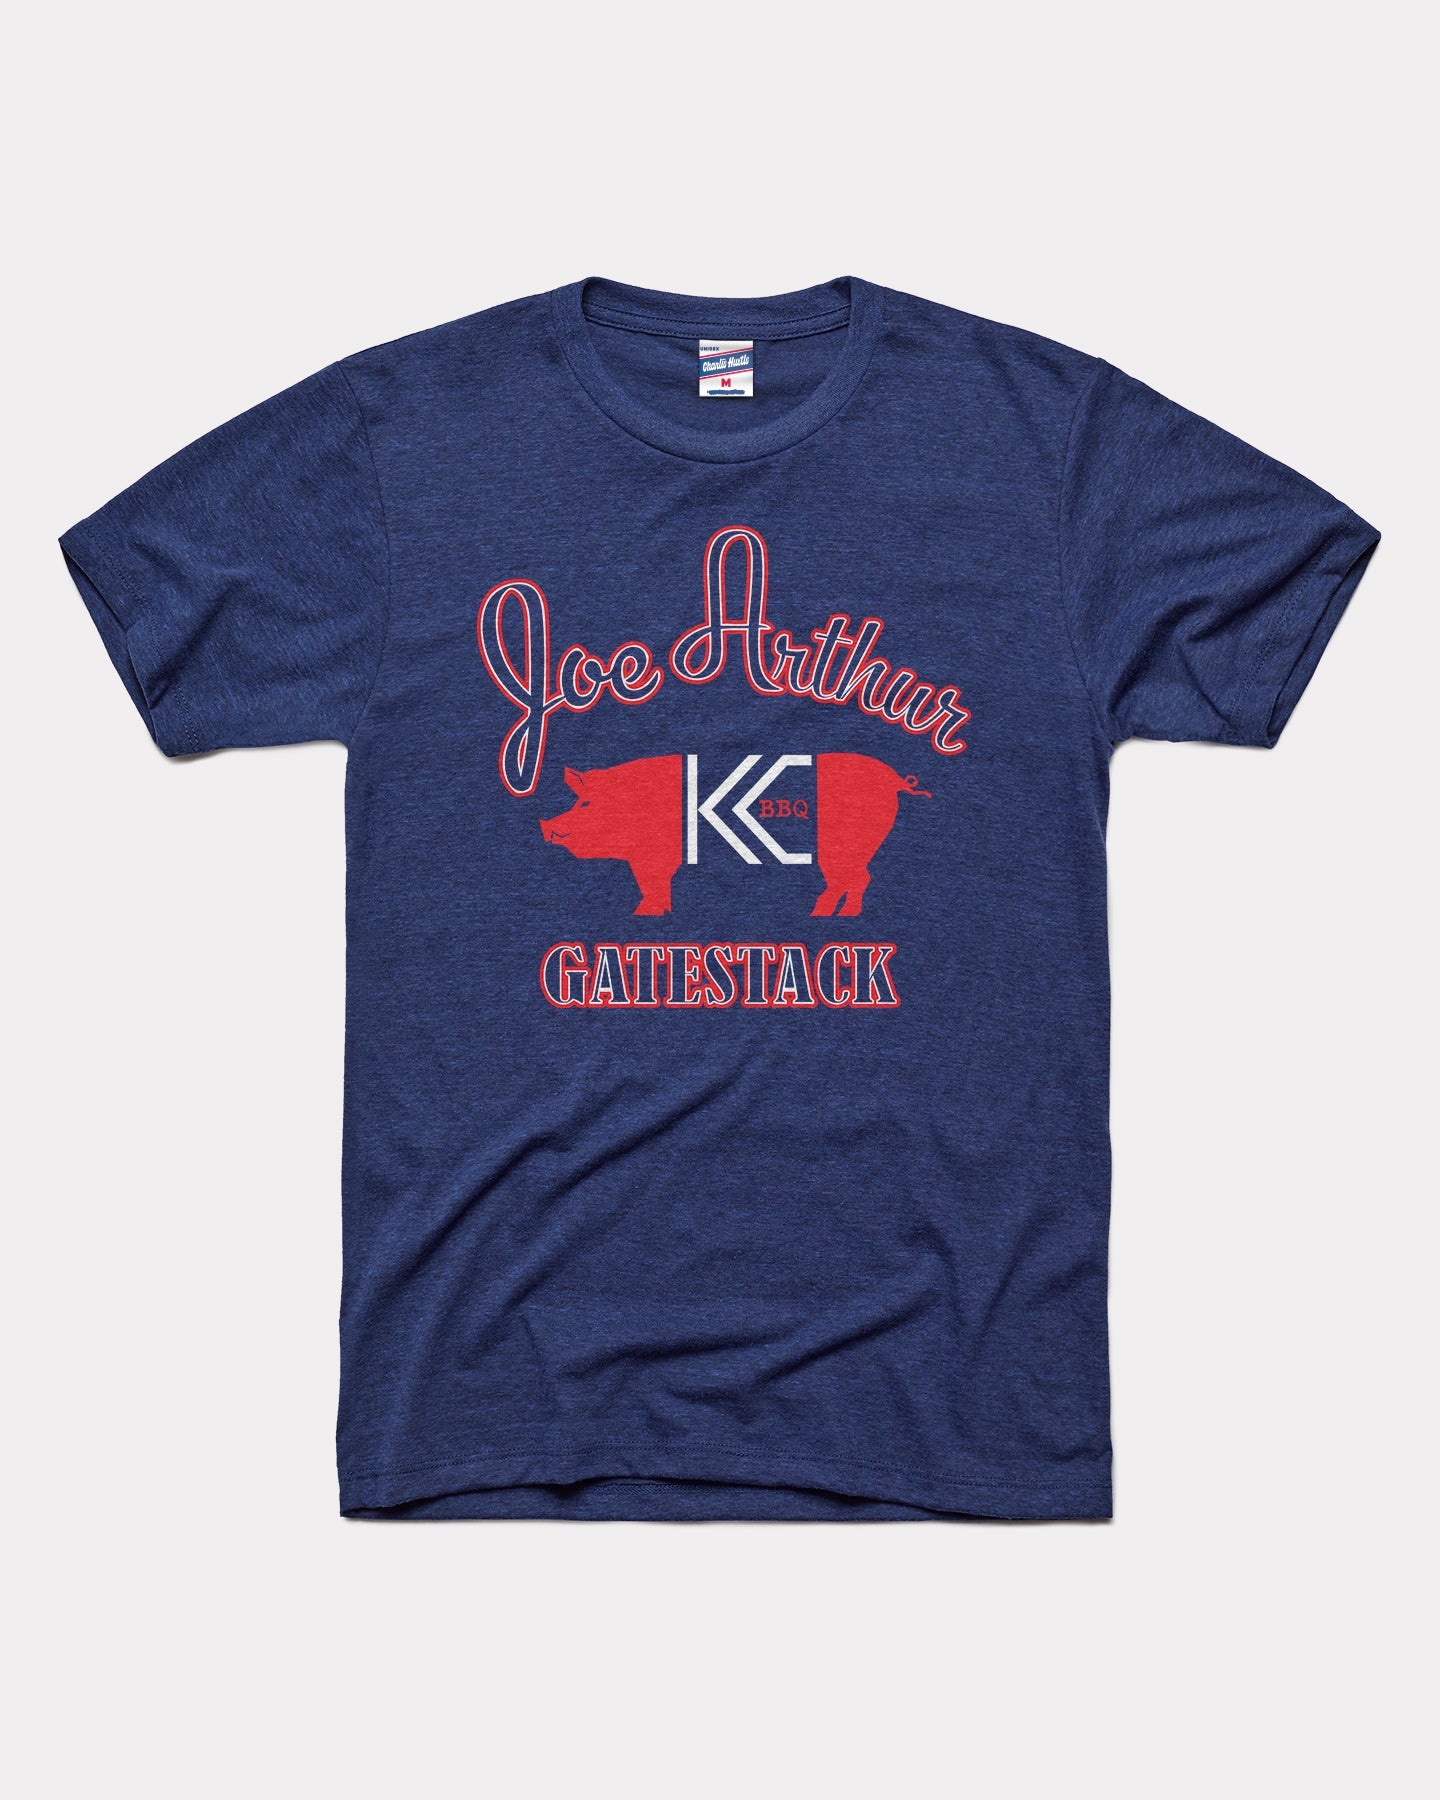 Kansas City Joe Arthur Gatestack BBQ Vintage T-Shirt